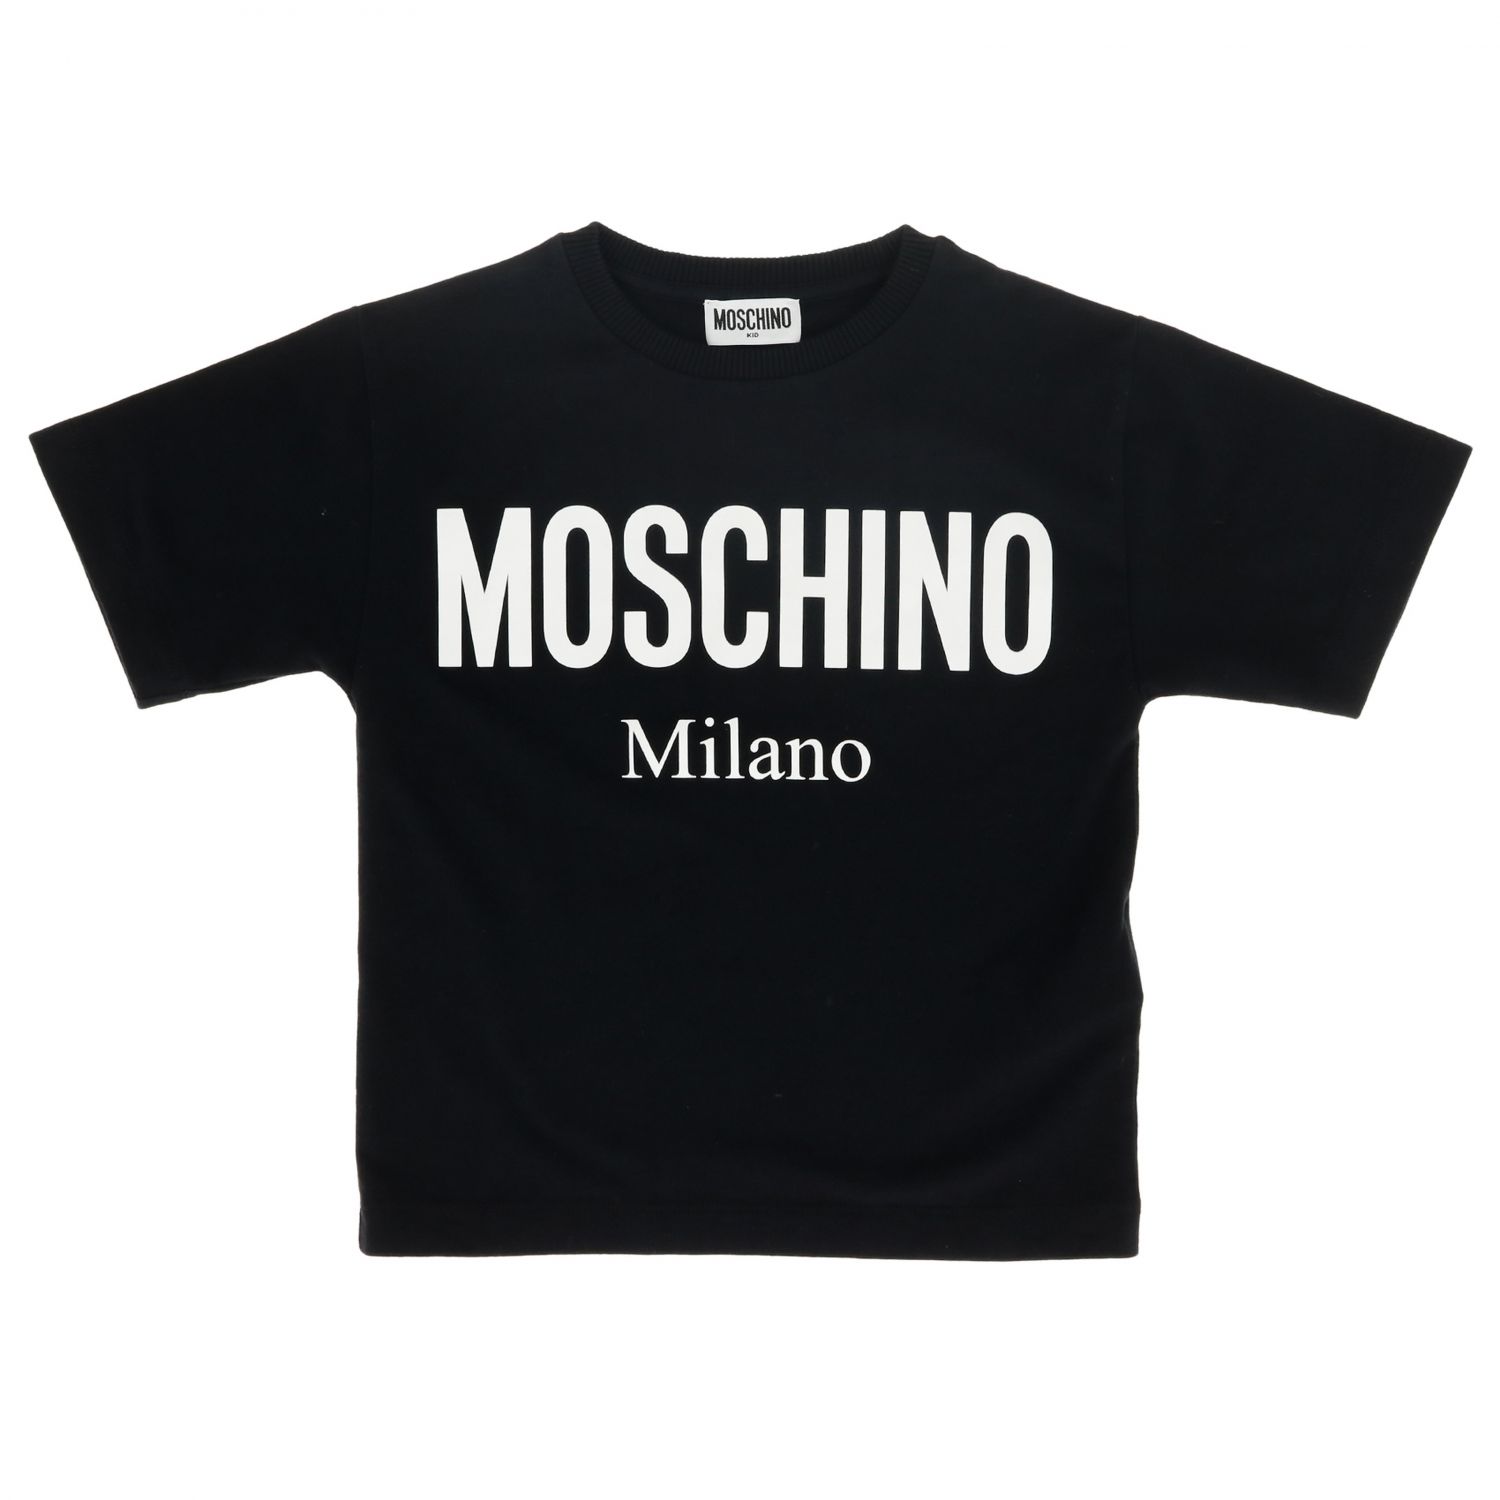 moschino milano black t shirt